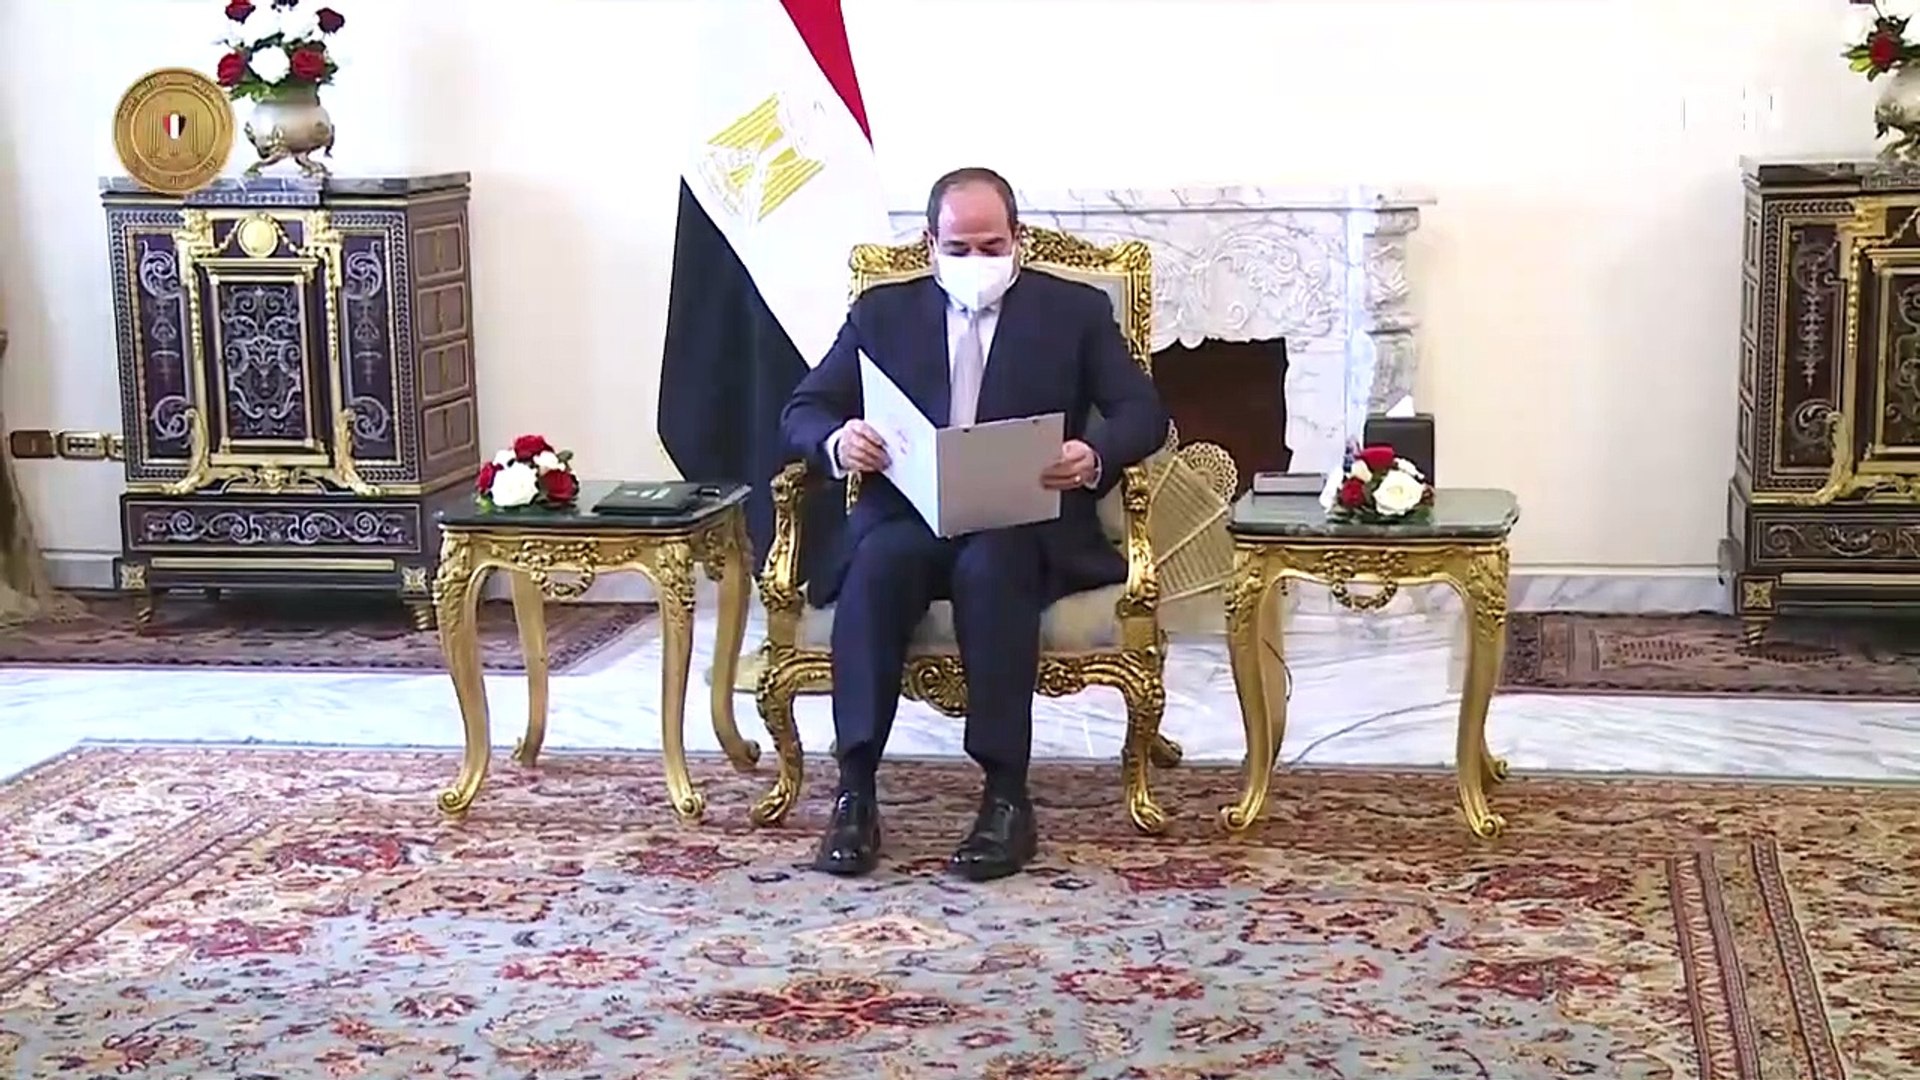 الرئيس يستقبل وزير الخارجية الكويتي يجتمع برئيس مجلس الوزراء ووزيري المالية  والصحة - فيديو Dailymotion